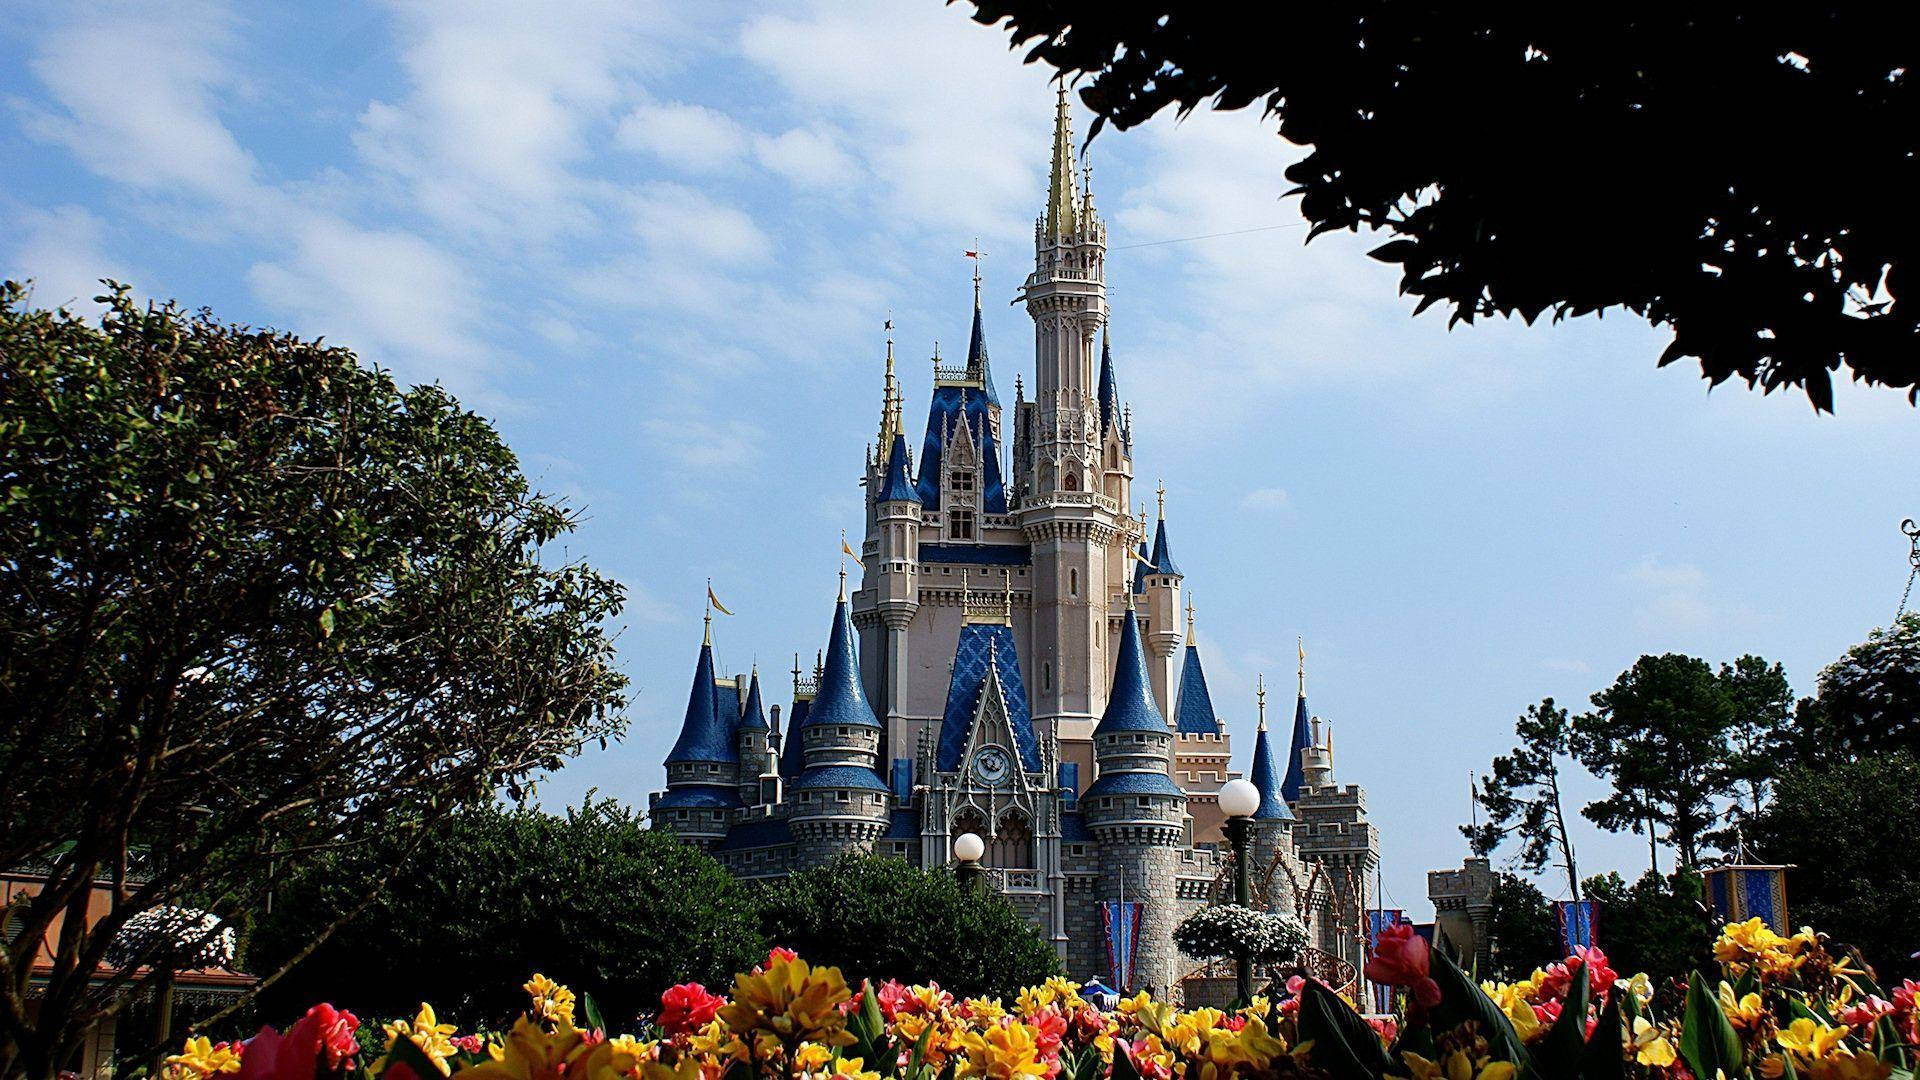 Besøg et vidunderligt land af magi og drømme med dette Disney World Faraway Castle Scene Wallpaper. Wallpaper